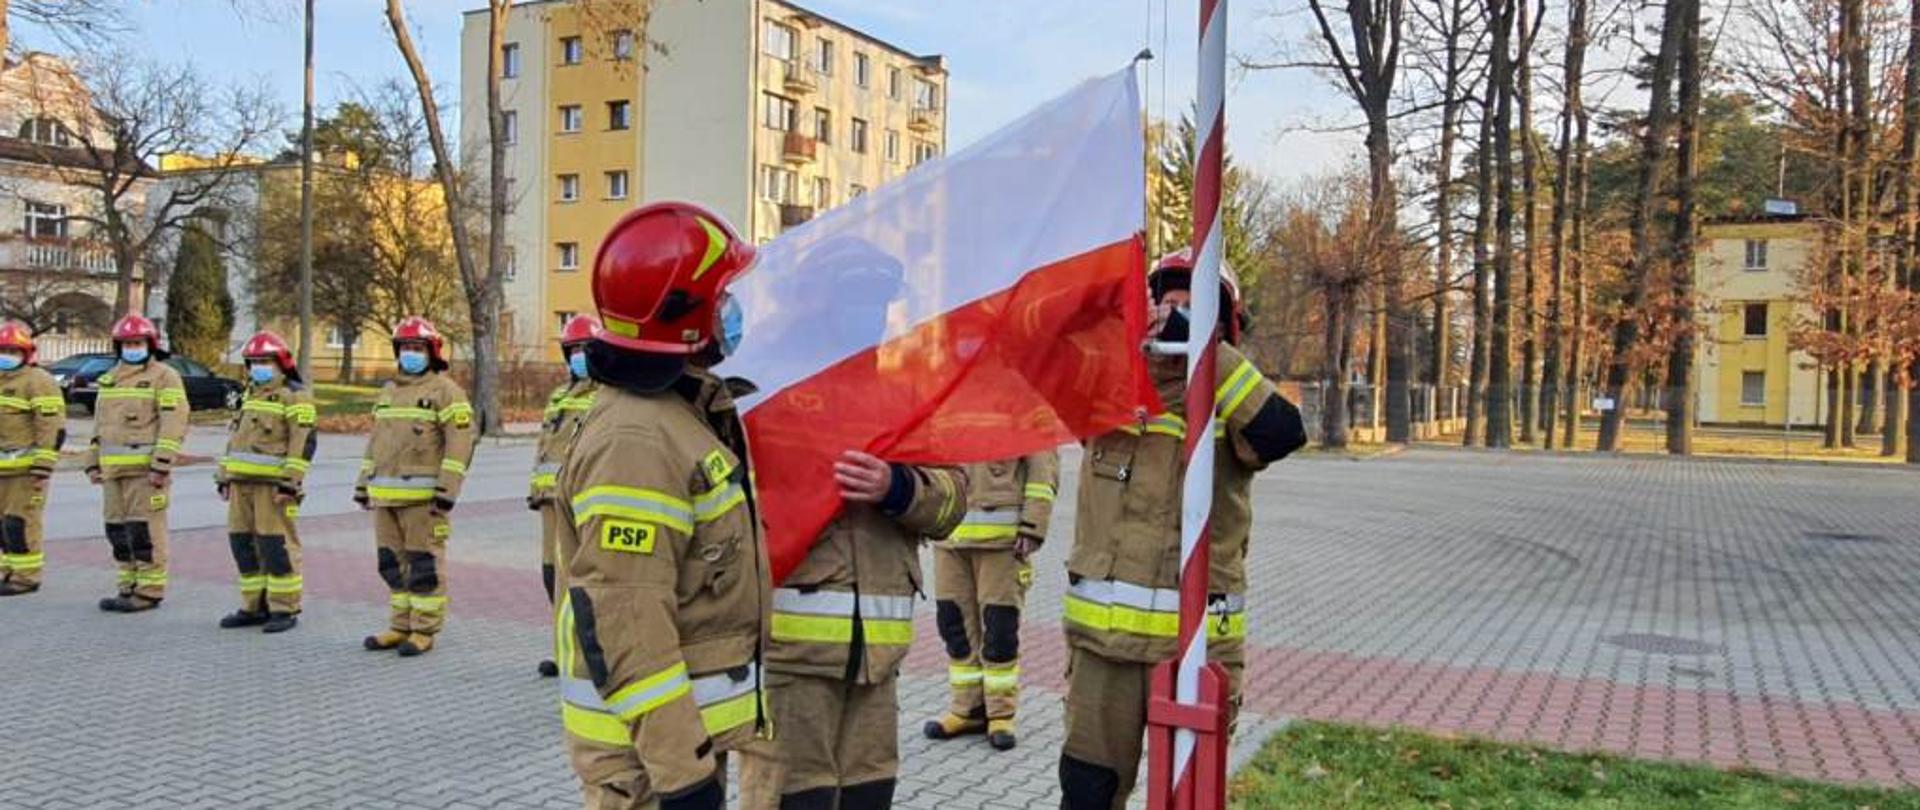 Zdjęcie przedstawia trzech funkcjonariuszy Państwowej Straży Pożarnej. Funkcjonariusze ubrani są w ubrania specjalne w kolorze żółtym. Na głowach mają czerwone hełmy. Dwóch z nich przygotowuje flagę do wciągnięcia na maszt. Zdjęcie wykonane przed Jednostką Ratowniczo – Gaśniczą numer 4 w Pionkach. 